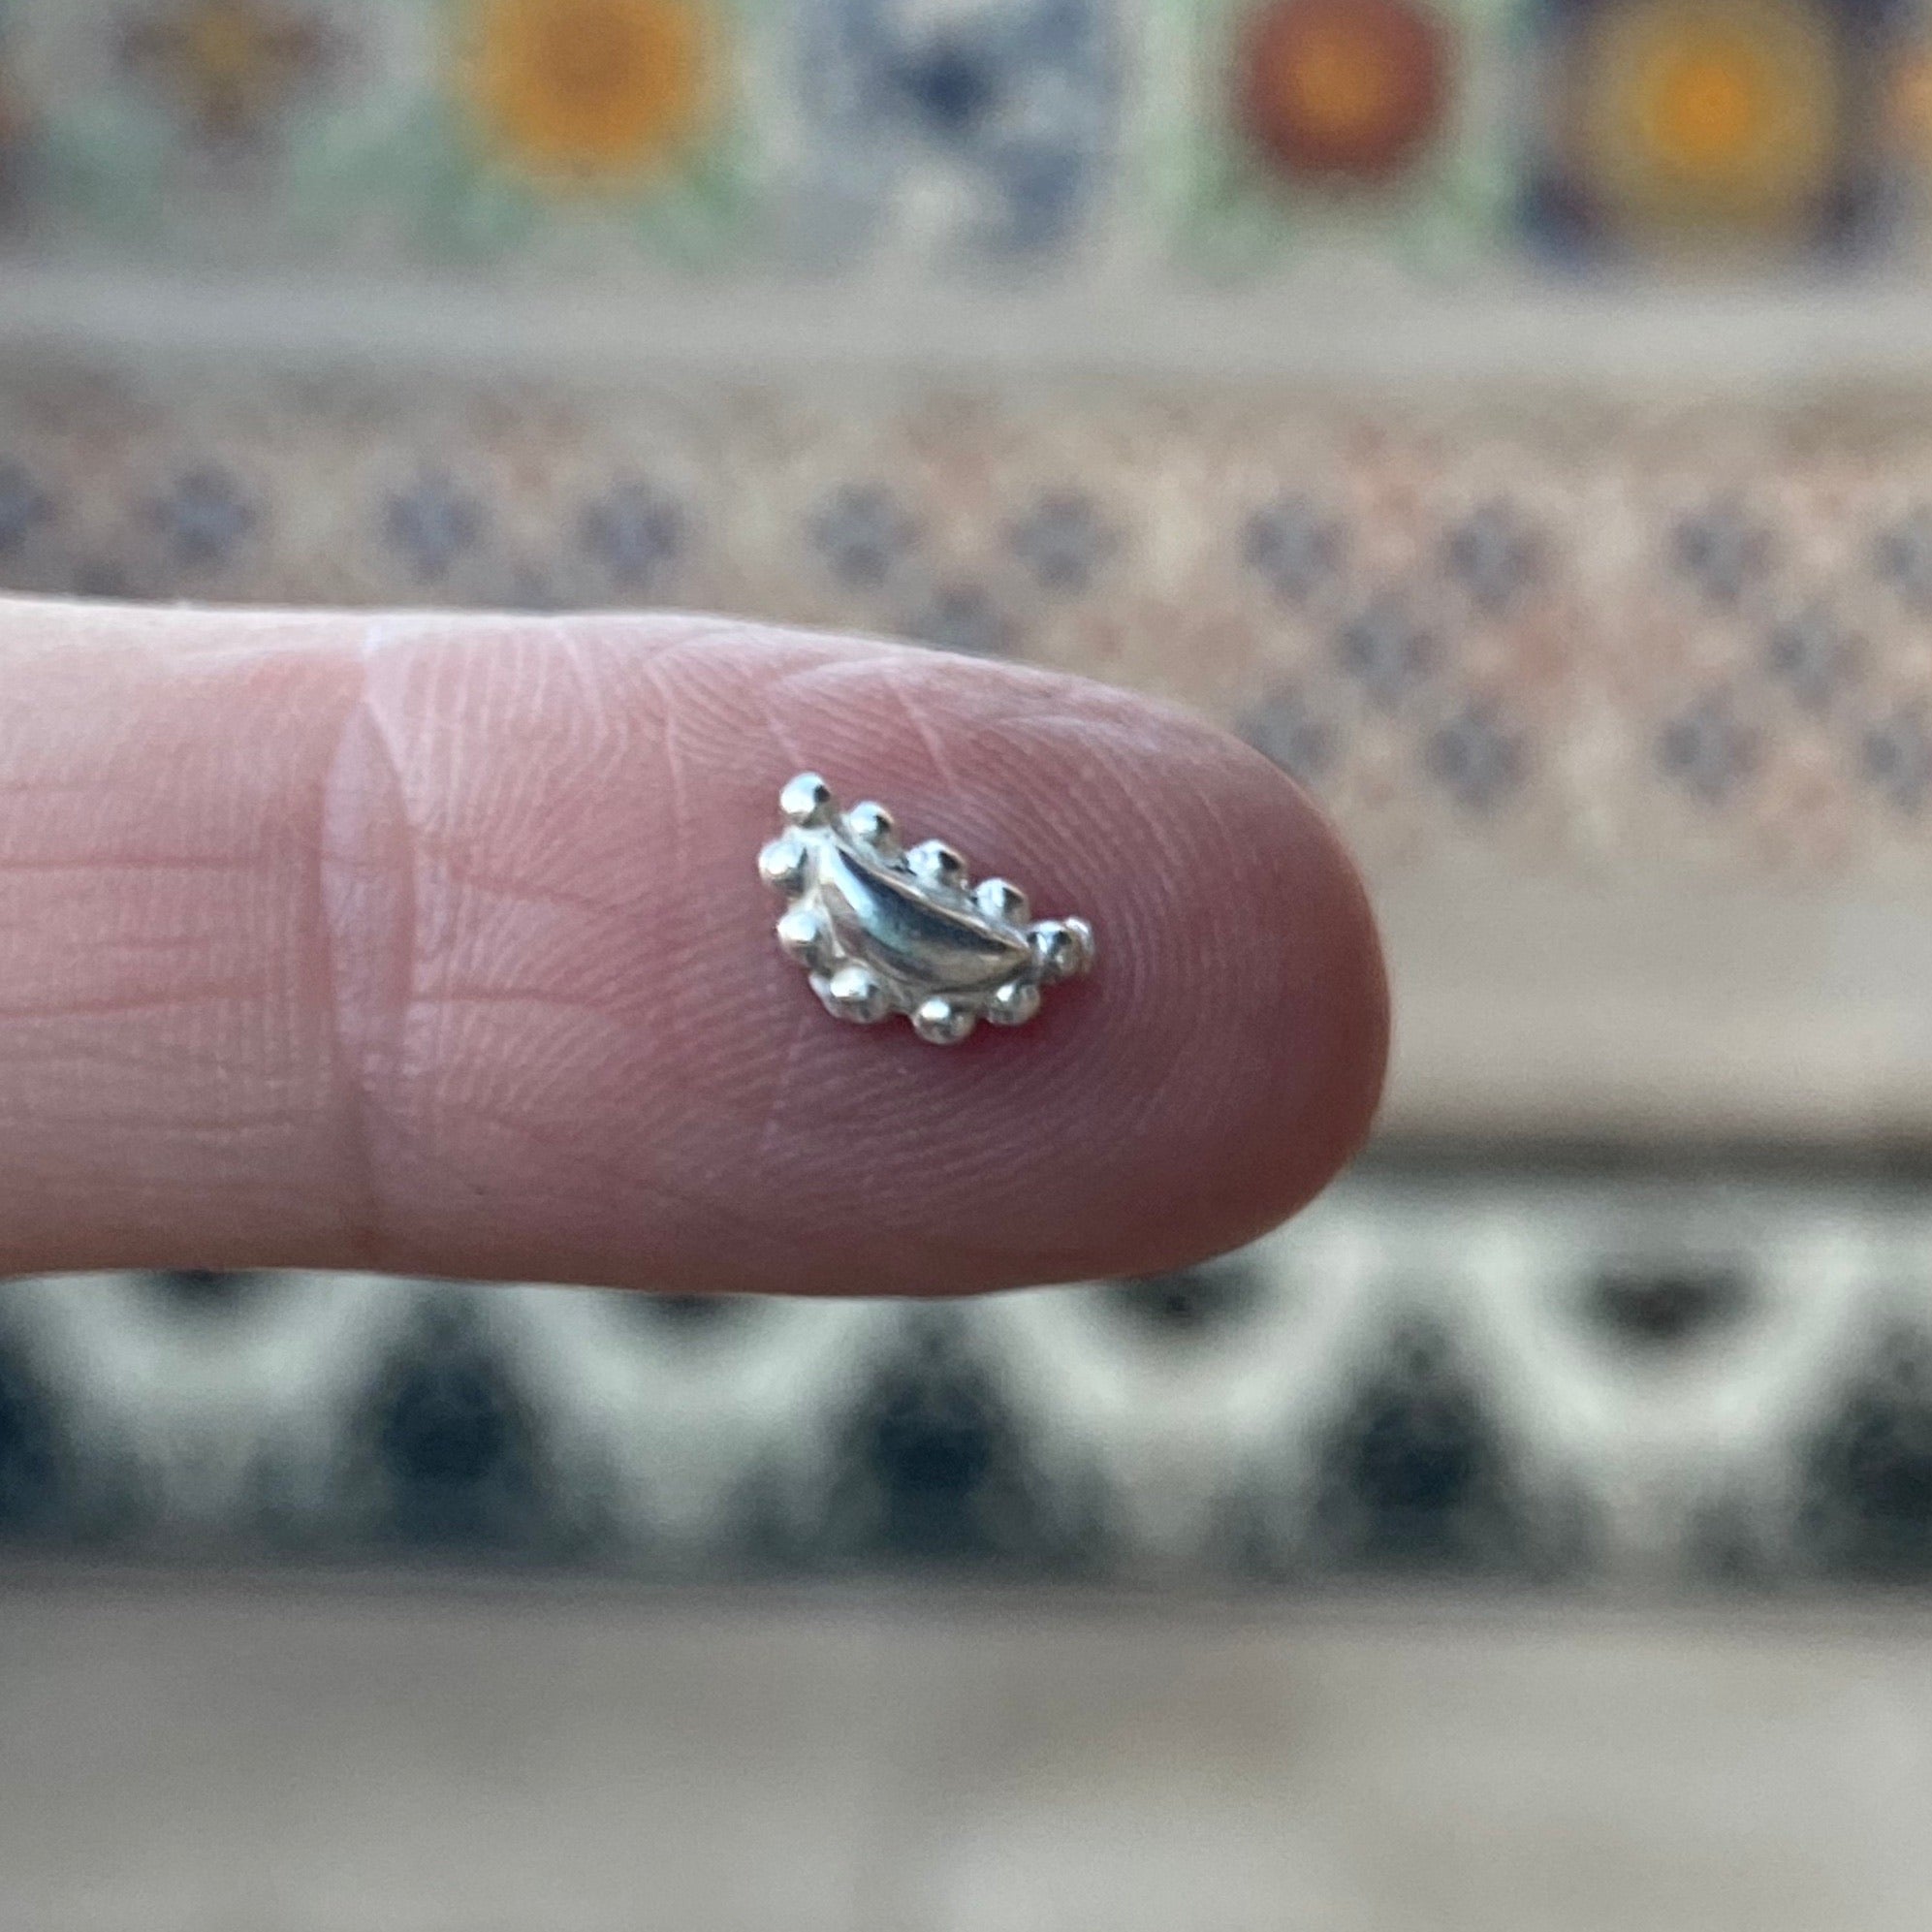 cast silver bead embellishment on finger